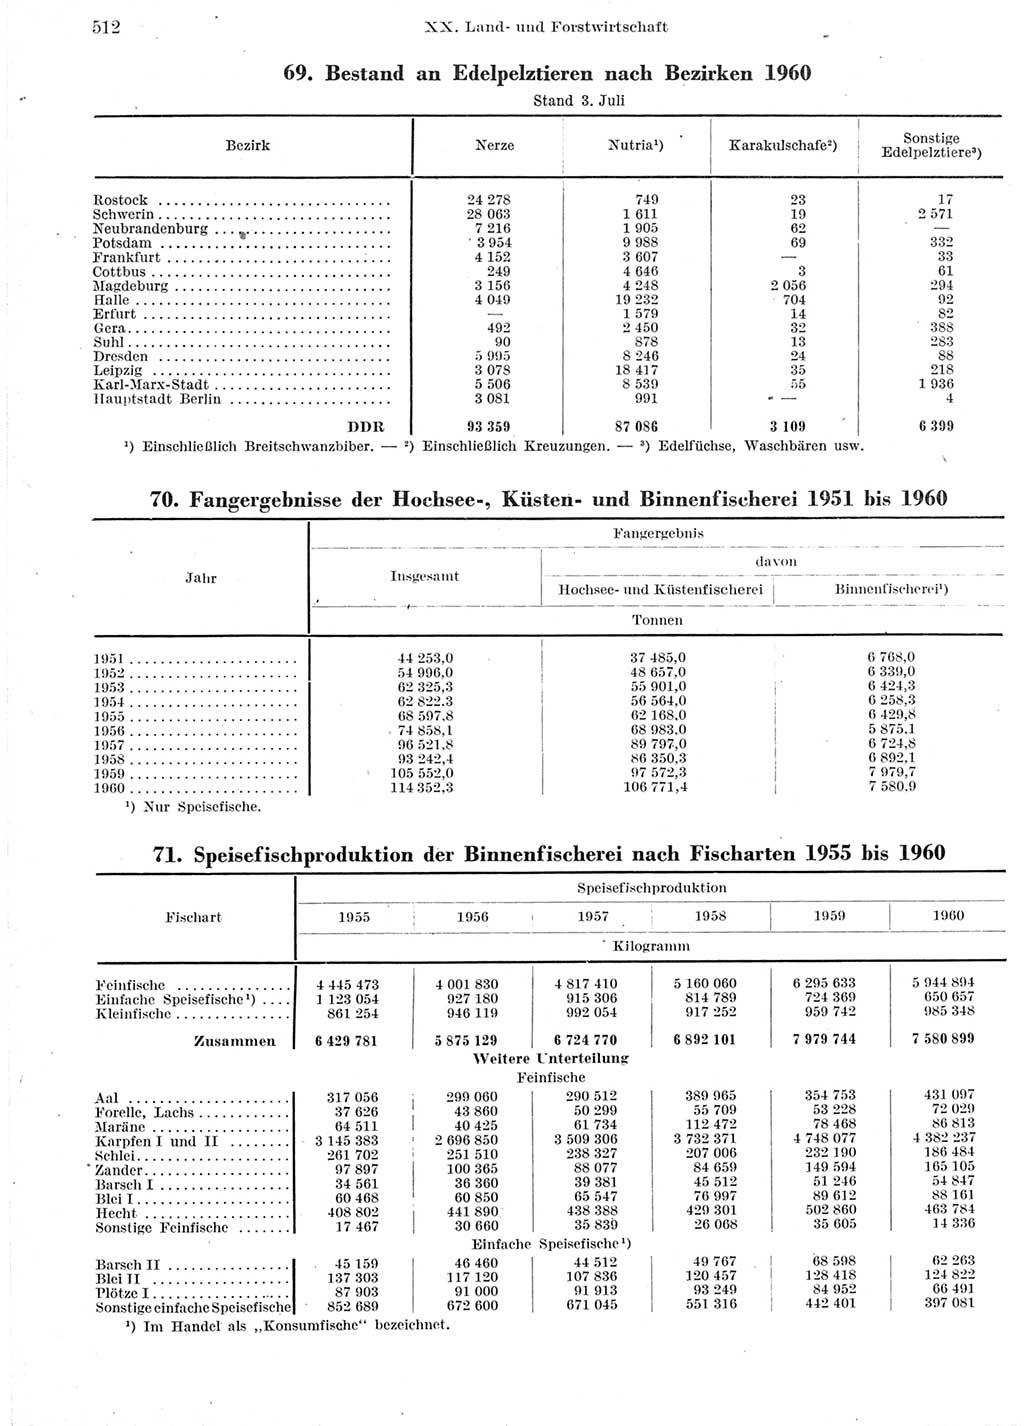 Statistisches Jahrbuch der Deutschen Demokratischen Republik (DDR) 1960-1961, Seite 512 (Stat. Jb. DDR 1960-1961, S. 512)